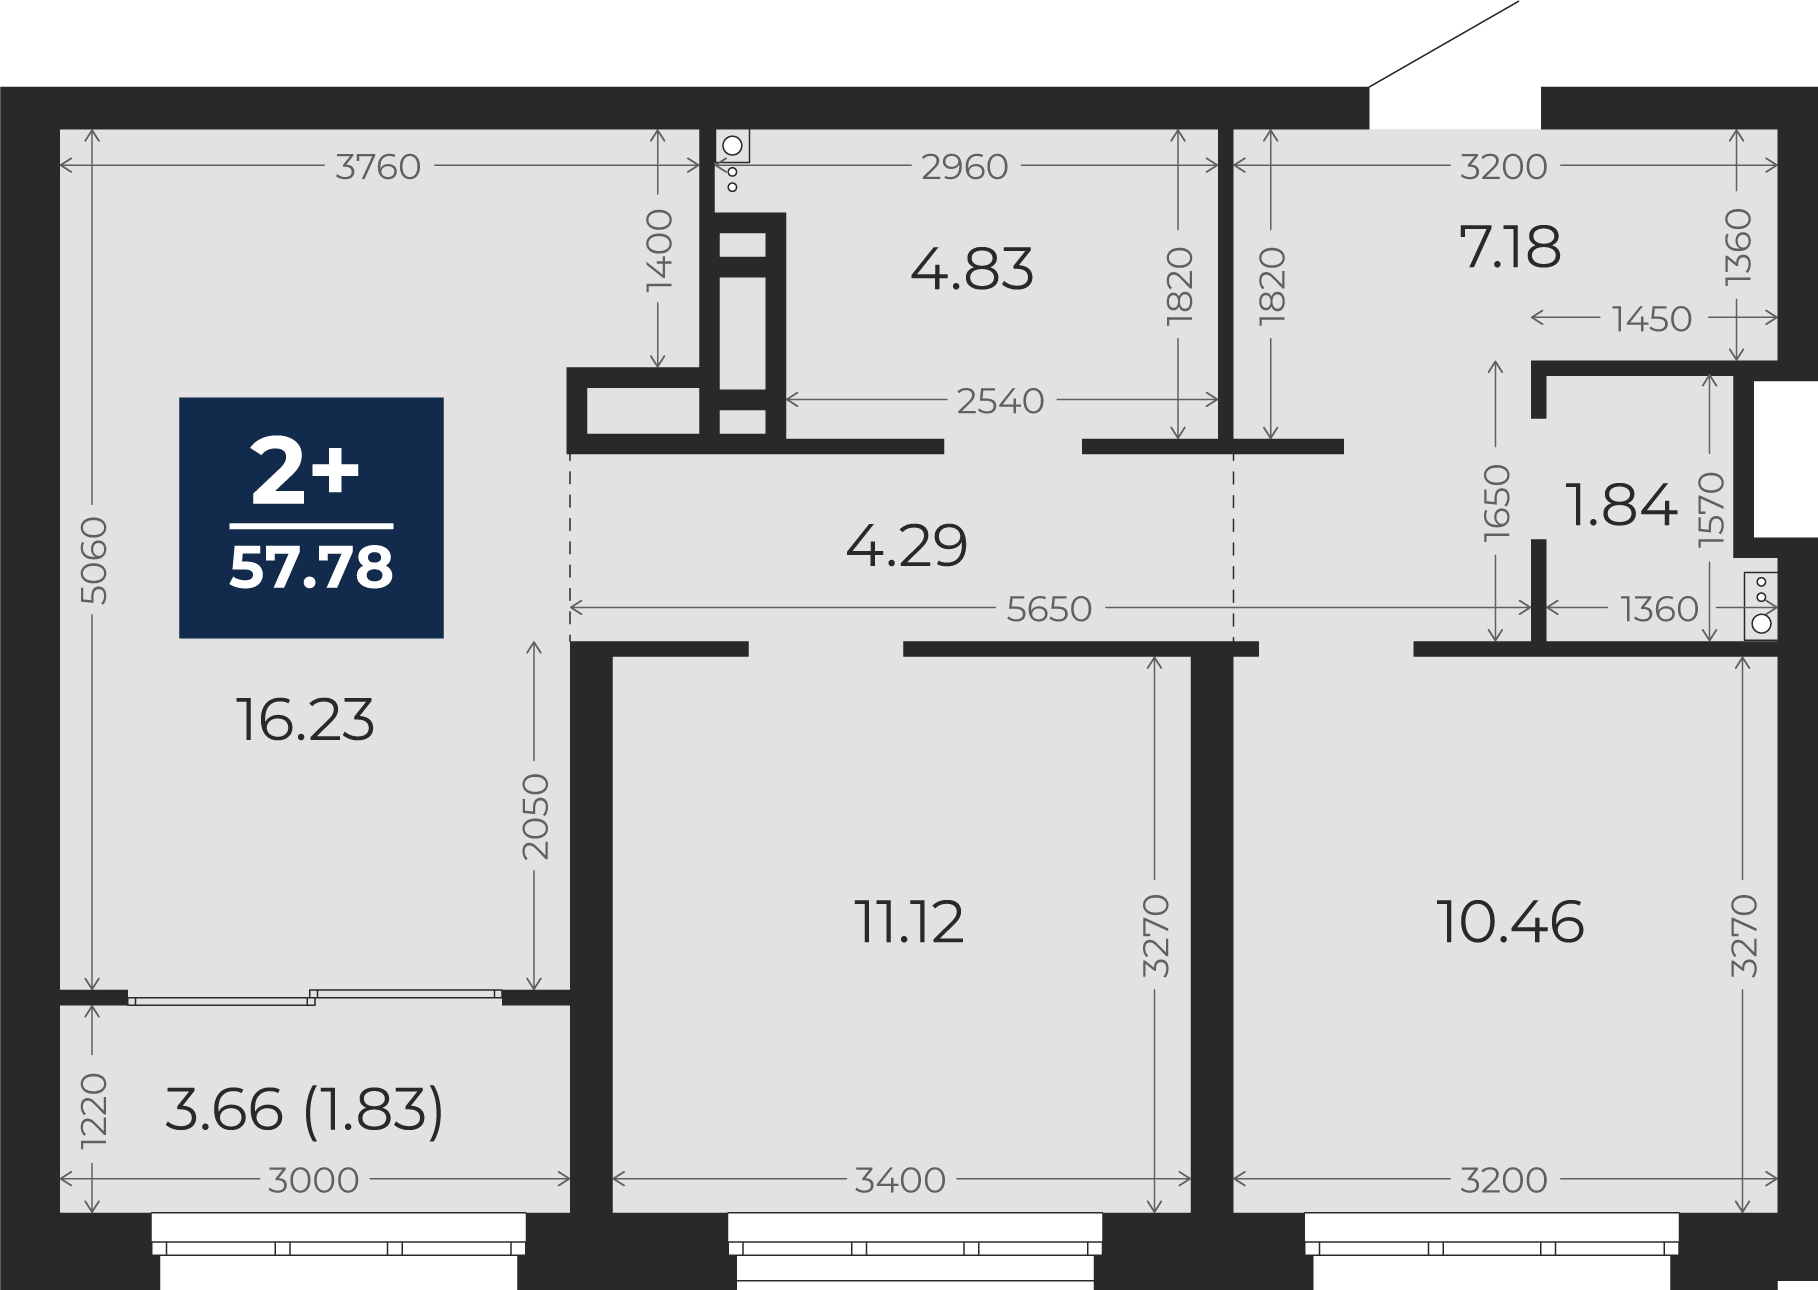 Квартира № 348, 2-комнатная, 57.78 кв. м, 2 этаж